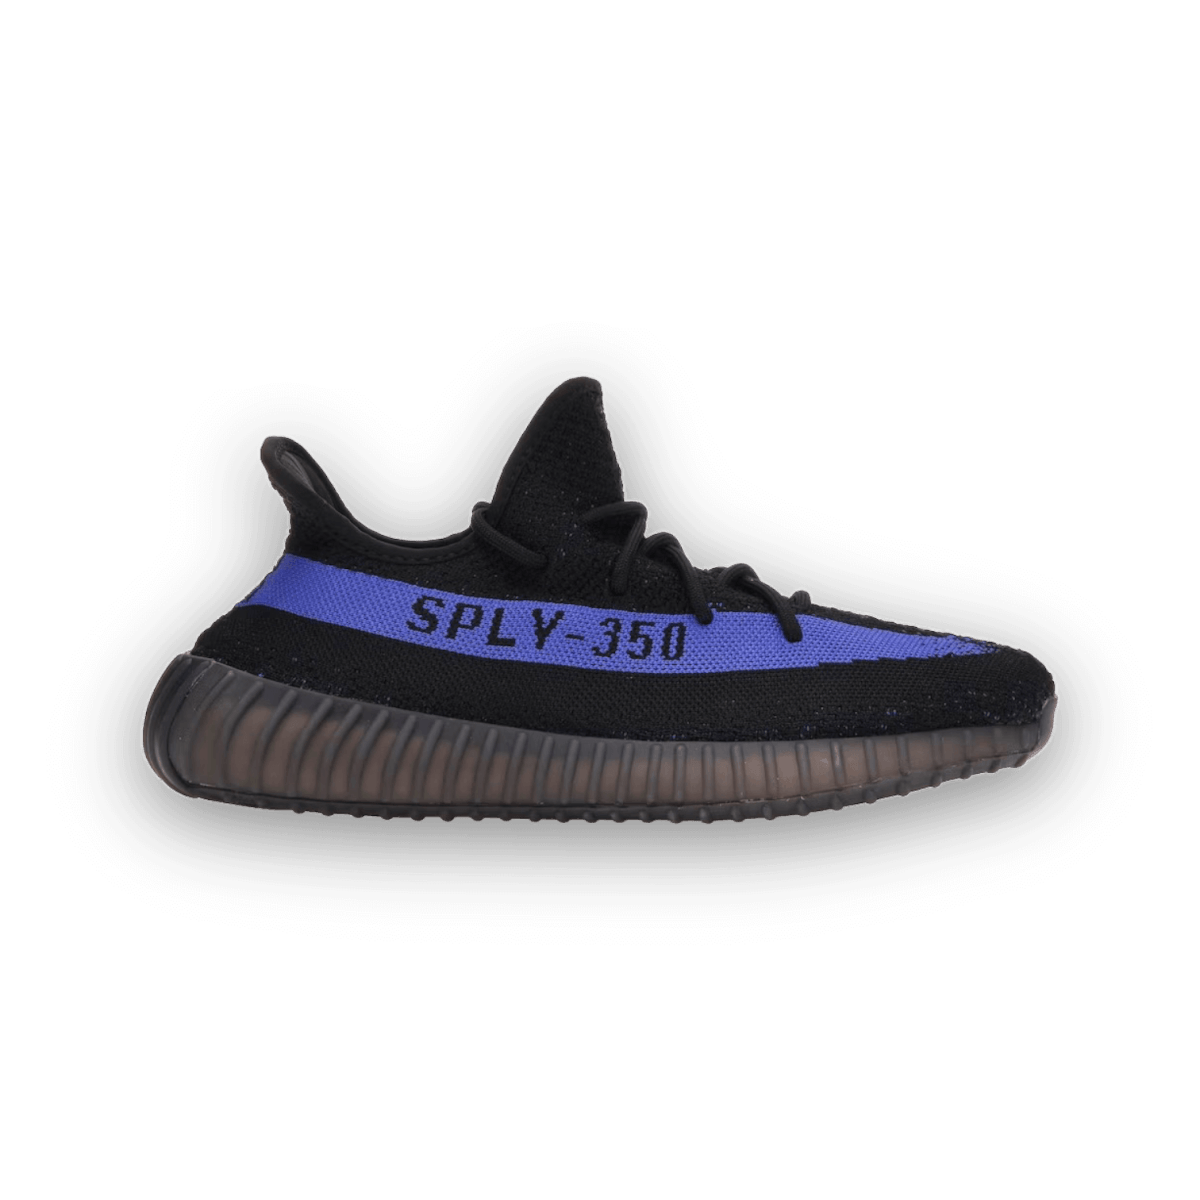 Yeezy Boost 350 V2 Dazzling Blue - Low Sneaker - Yeezy - Jawns on Fire